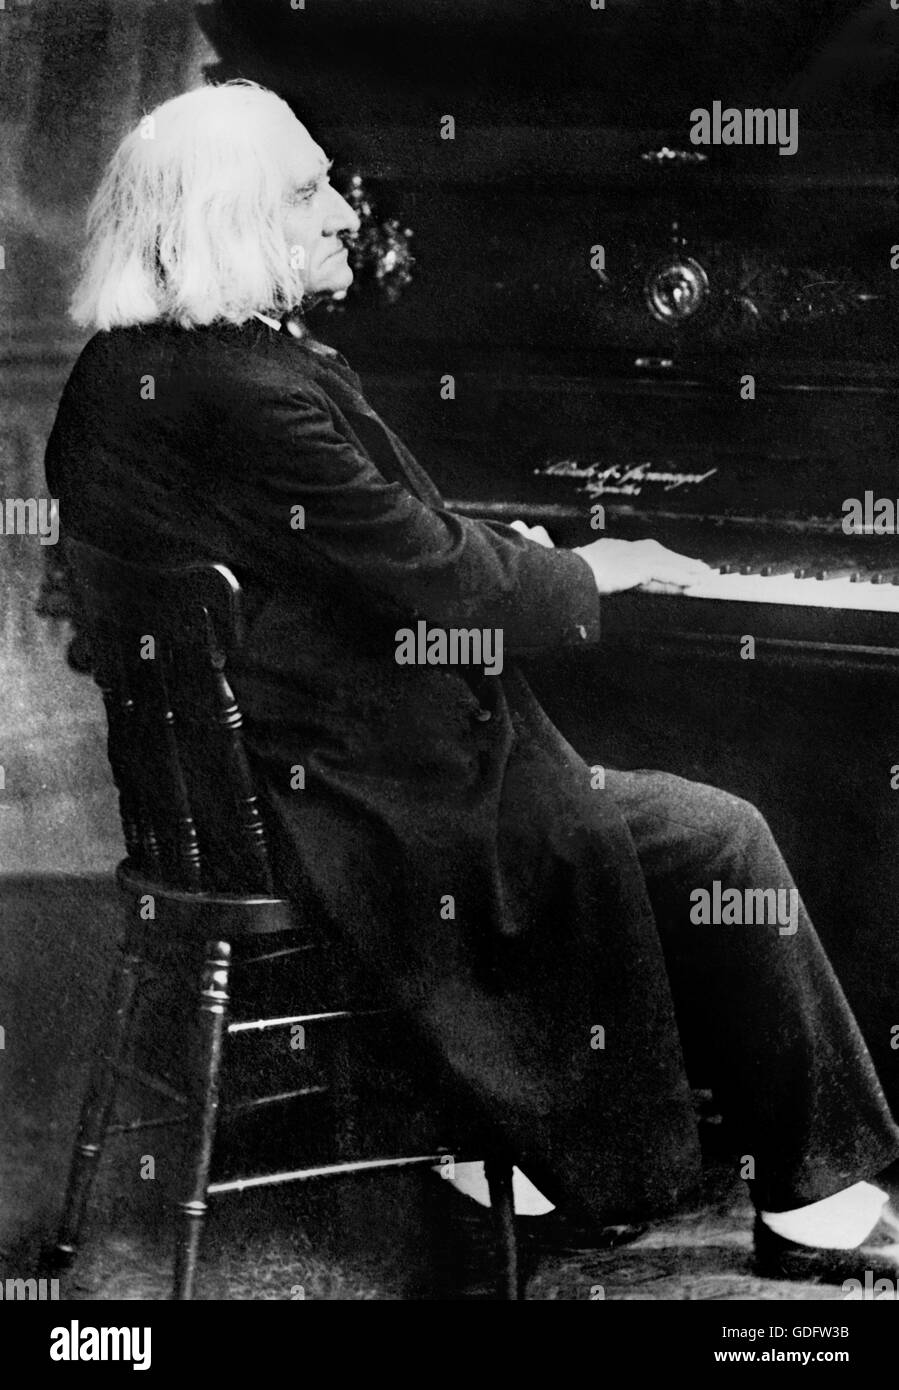 Franz Liszt. Porträt der ungarische Pianist und Komponist Franz Liszt (1811-1886) Klavier zu spielen. Foto von Bain News Service, Datum unbekannt. Stockfoto